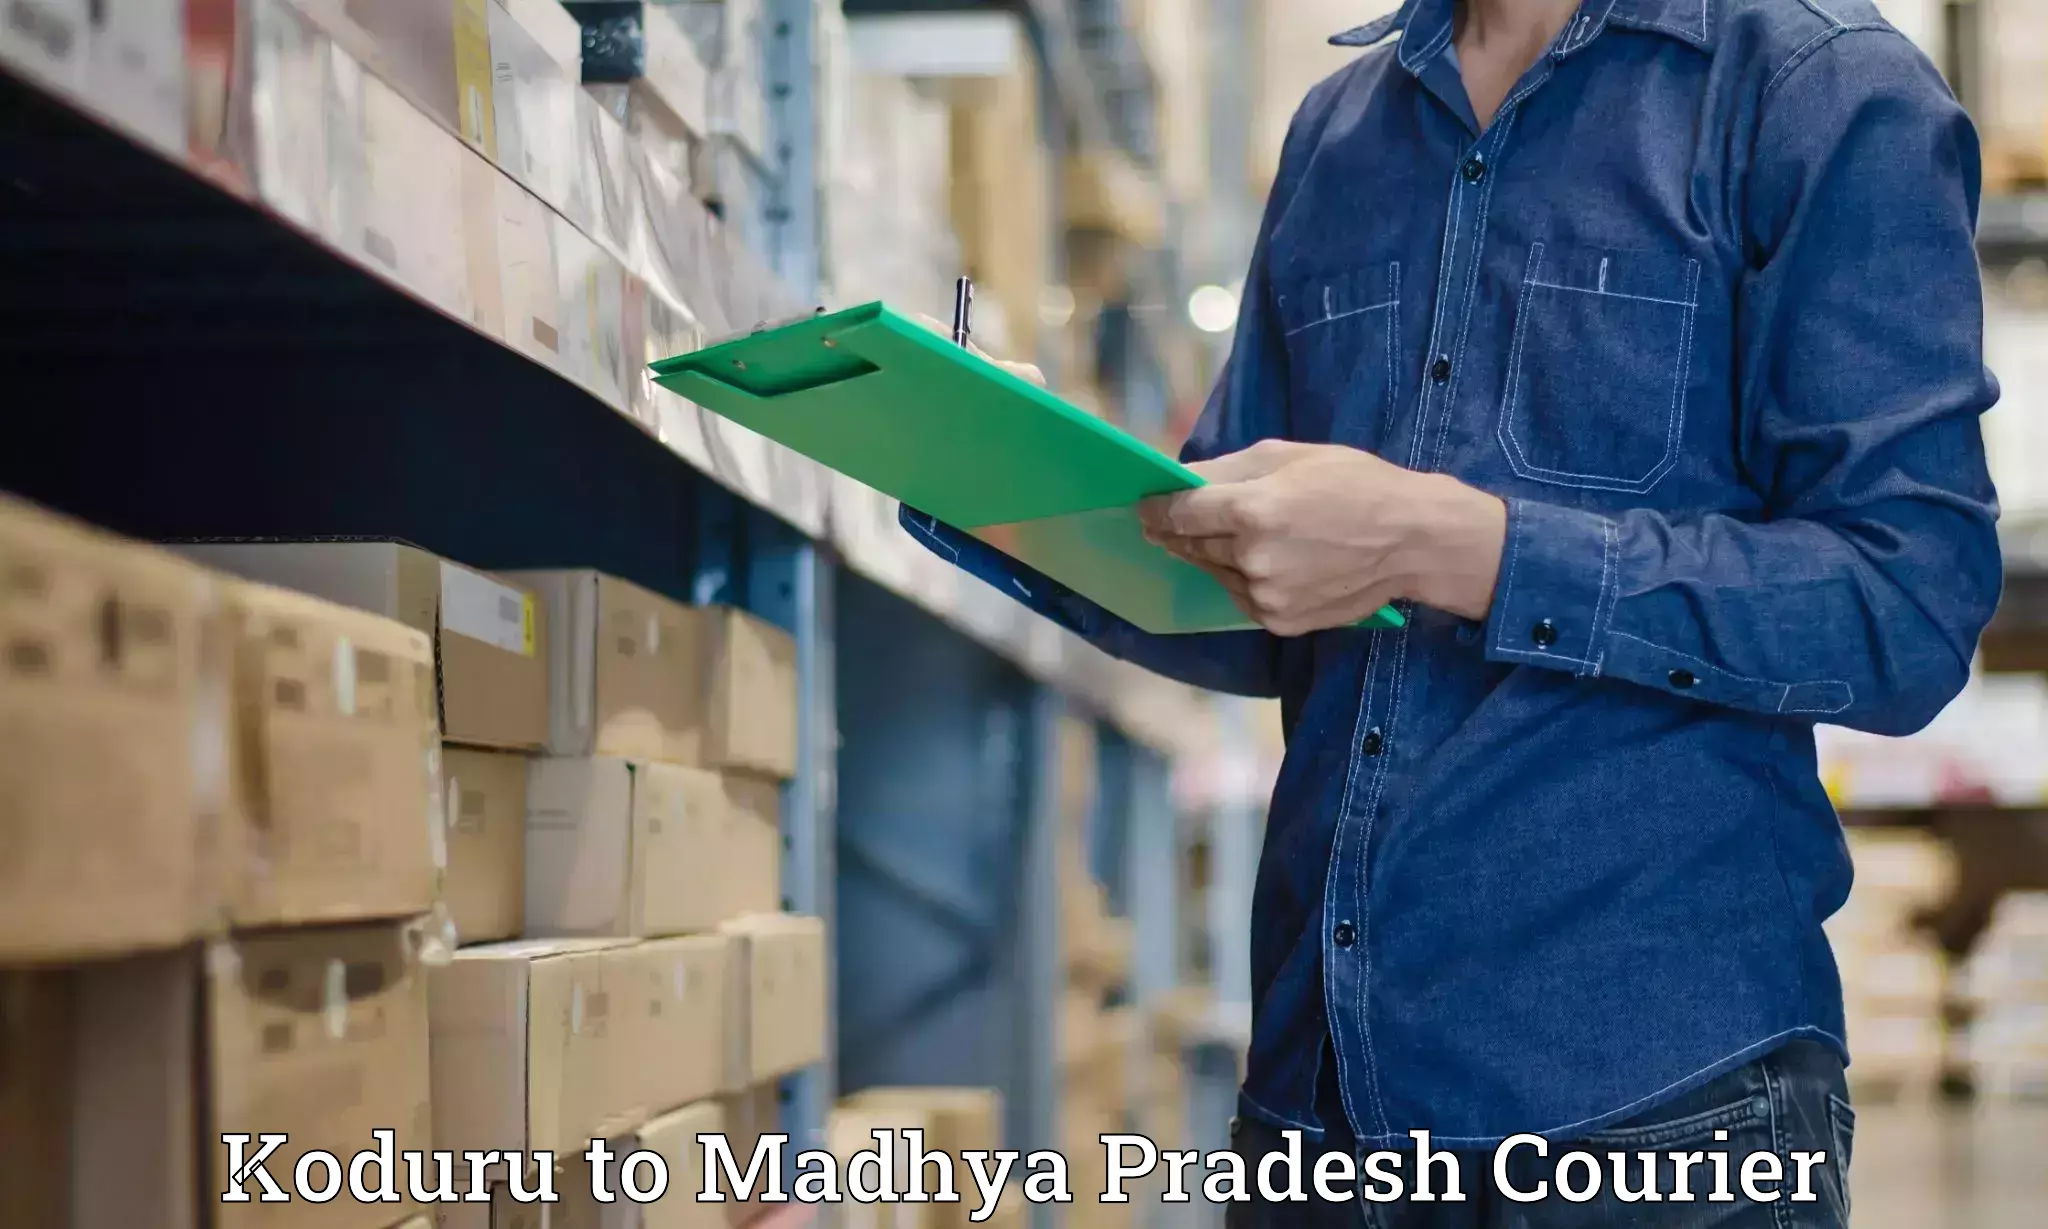 Package delivery network Koduru to Madhya Pradesh